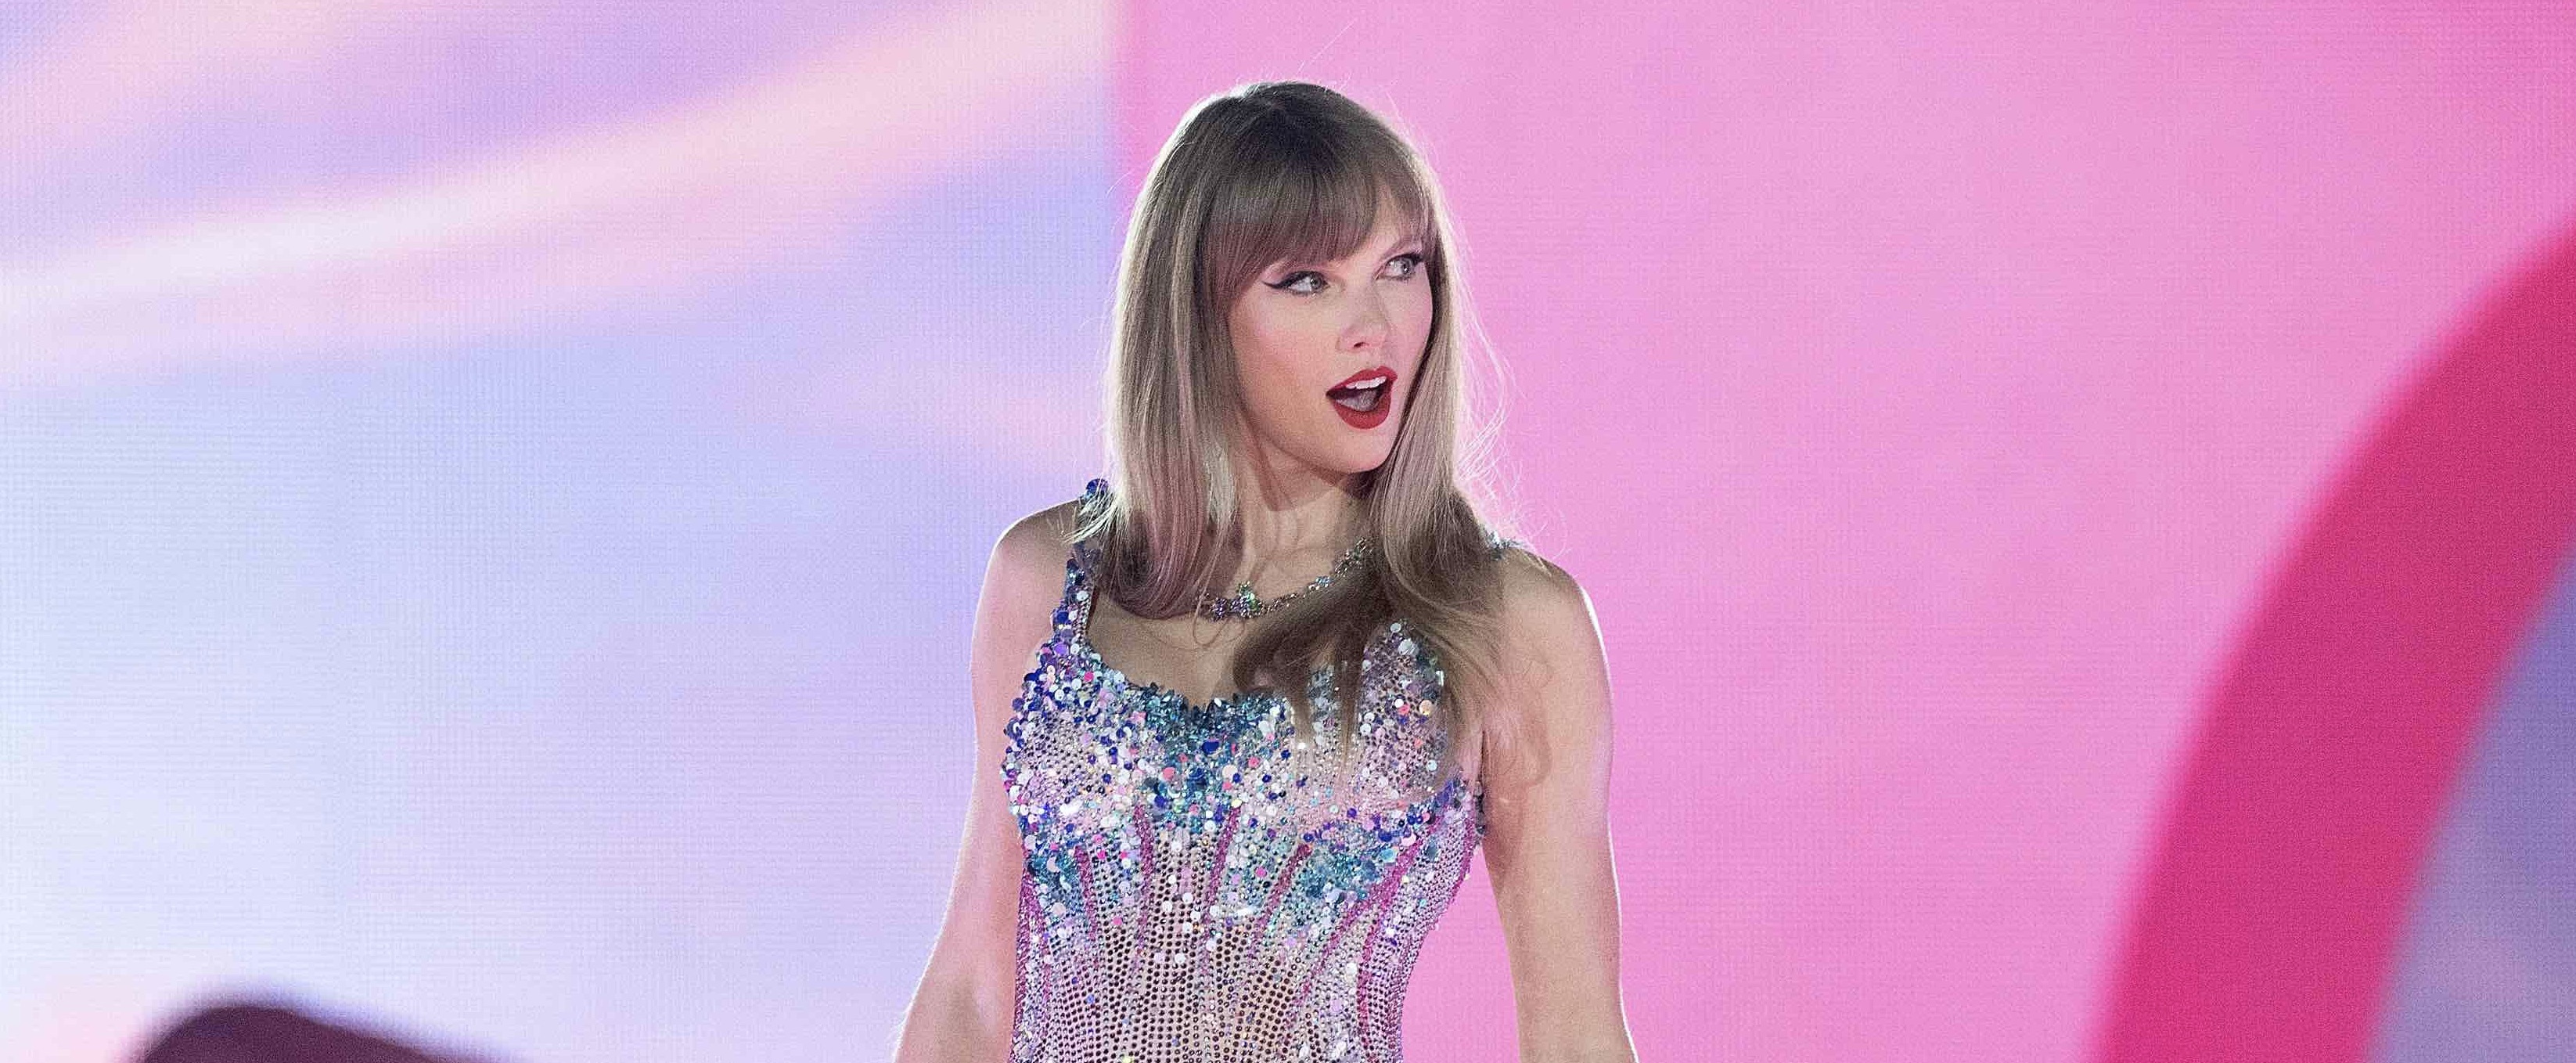 Hoe hield Taylor Swifts make-up het in vredesnaam vol tijdens de stortbui? Nou, door deze settingspray